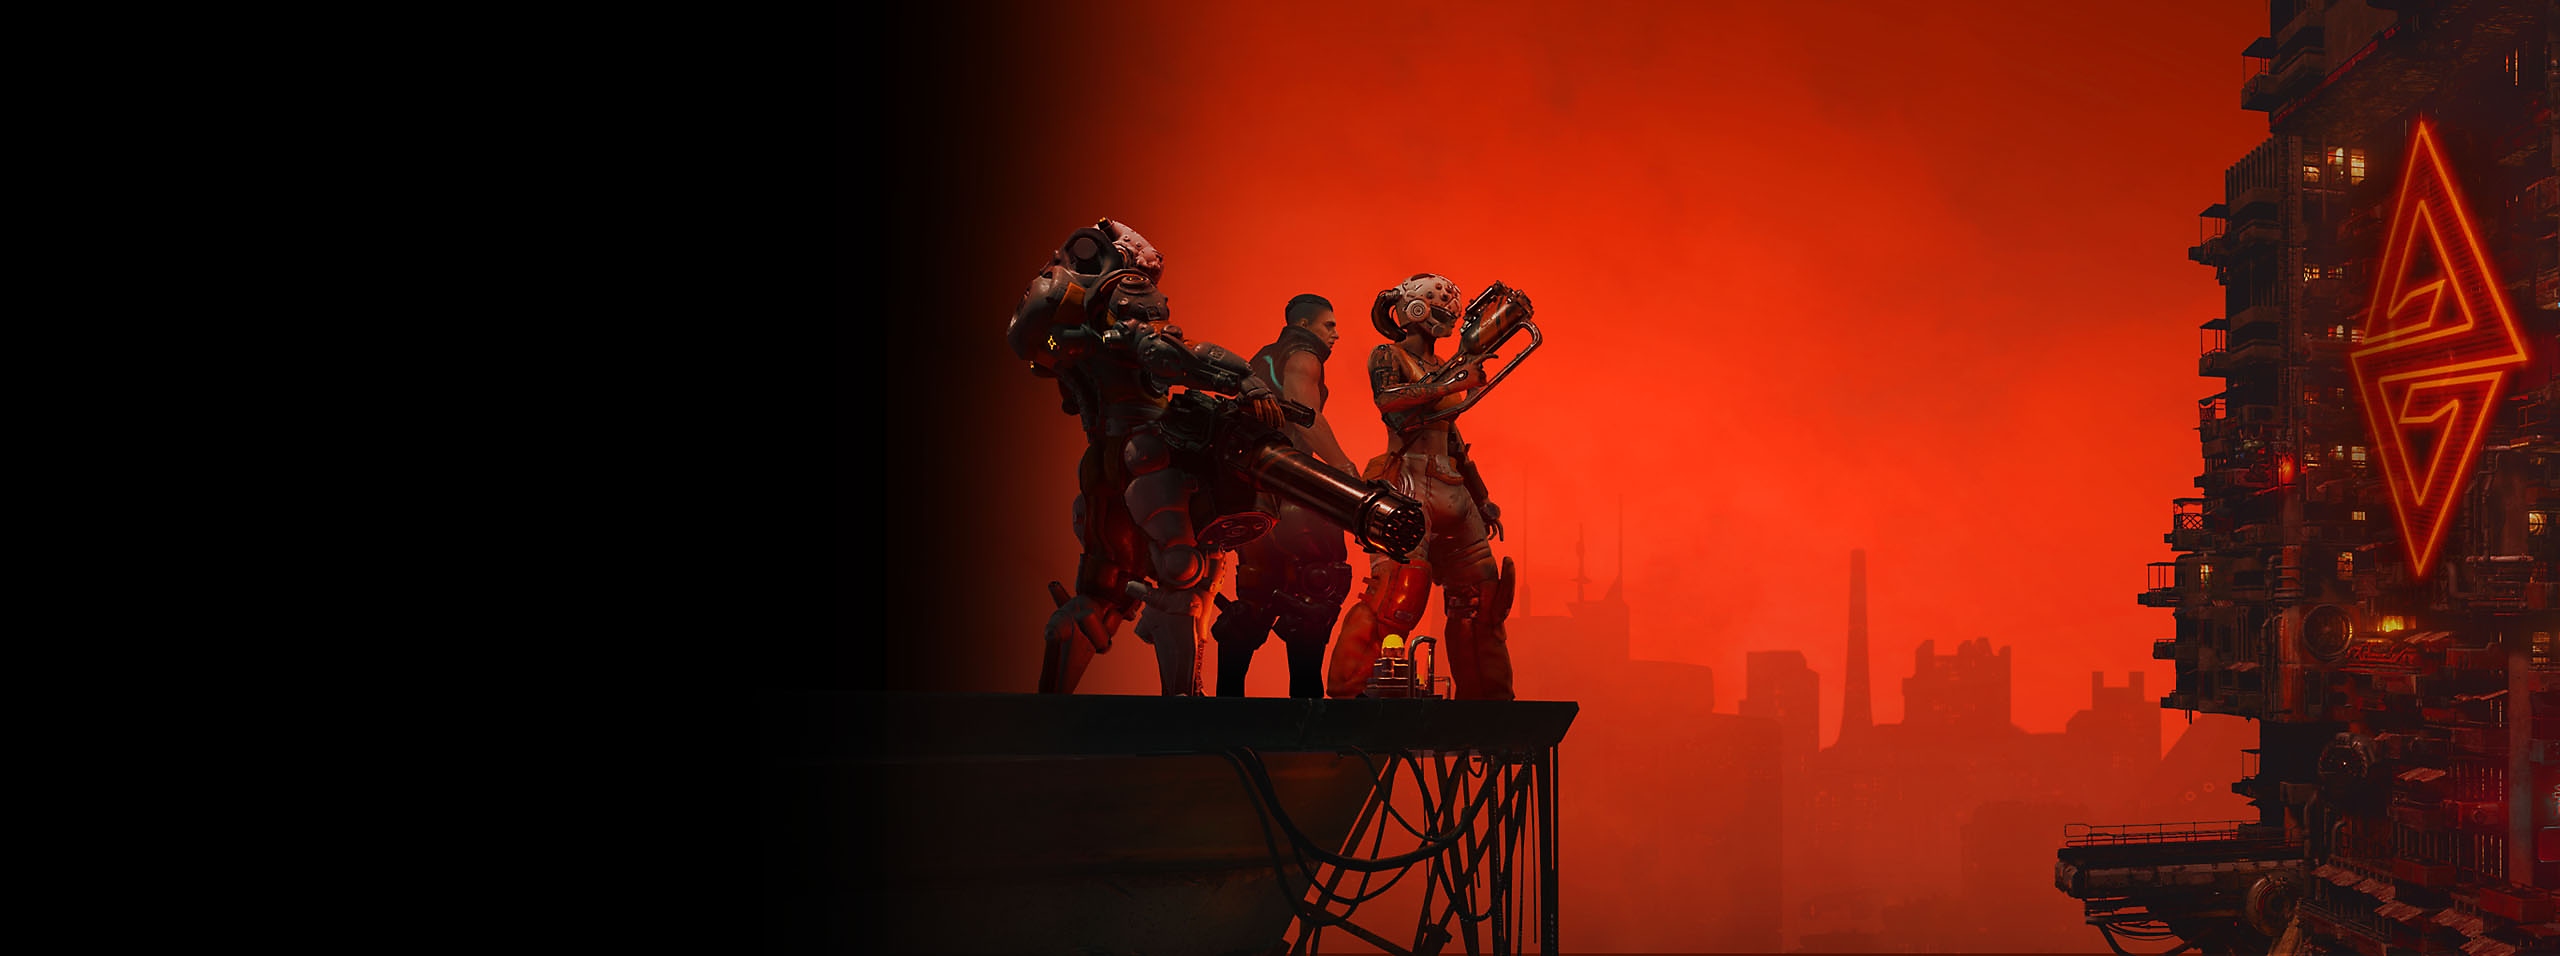 The Ascent hős grafikája három szereplővel és egy város sziluettjével vörös ég alatt 